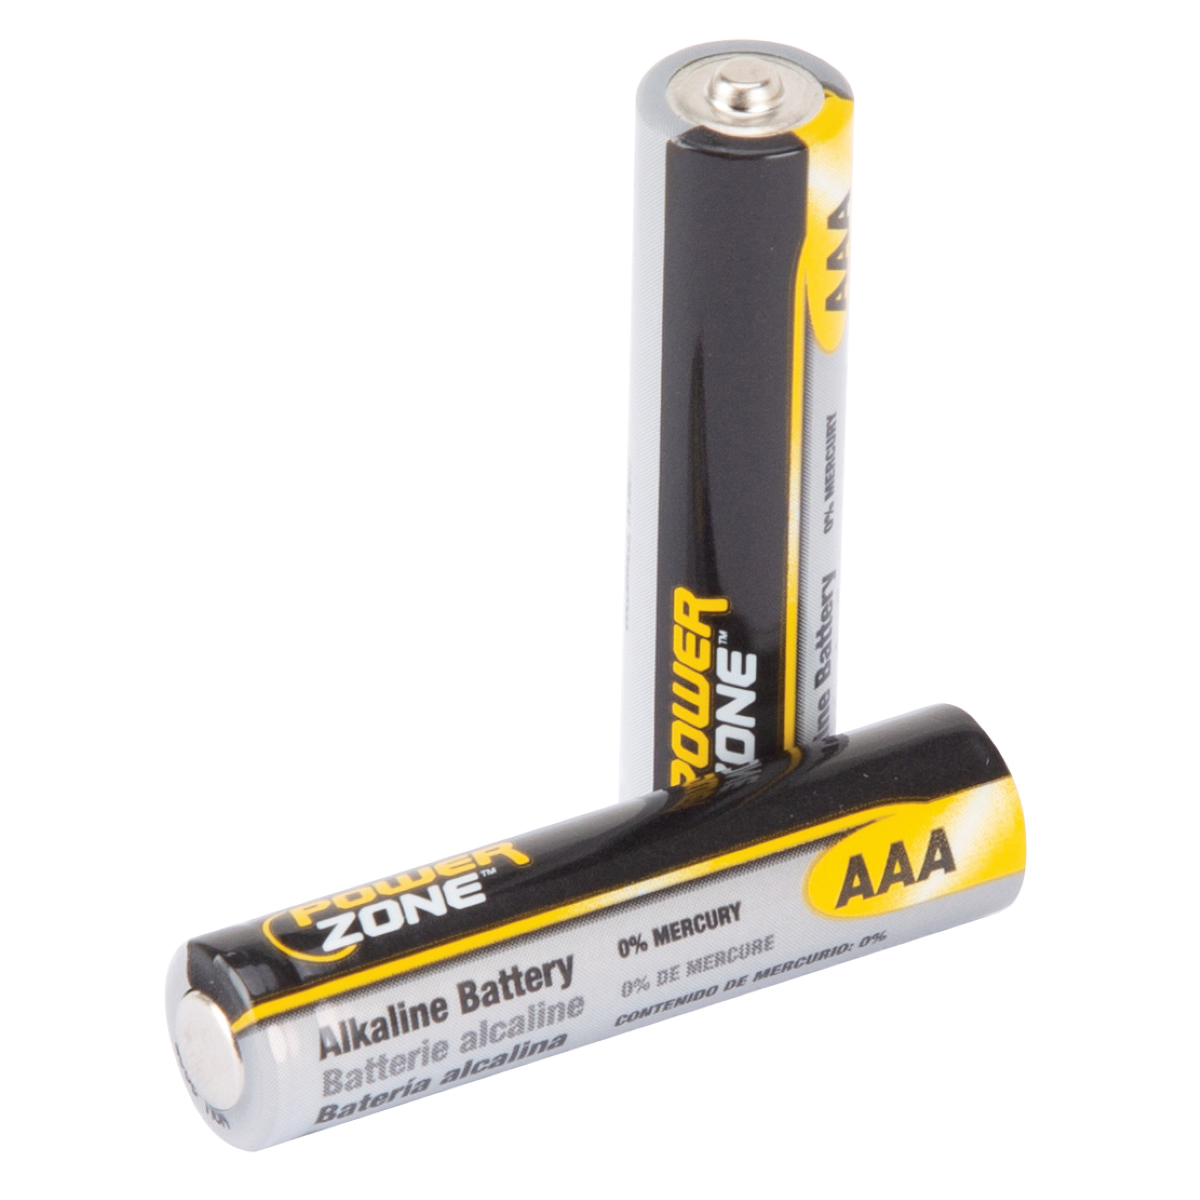 LR03-24P, 1.5 V Battery, AAA Battery, 24 pk